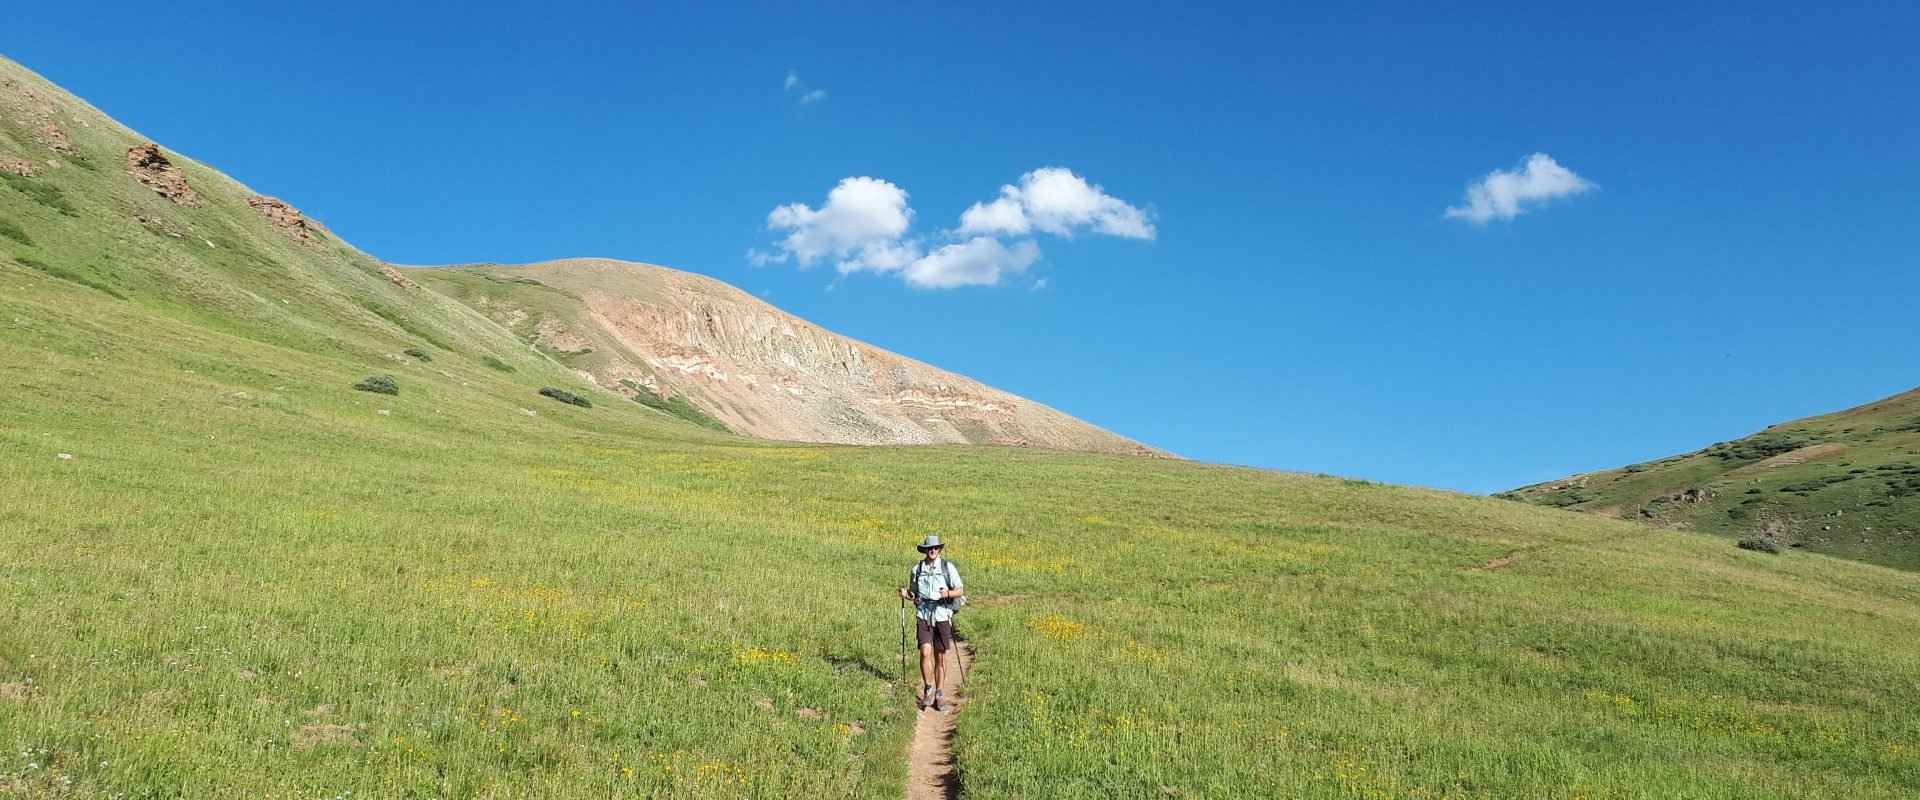 Colorado Trail/Continental Divide Trail : 900km à pieds dans le Colorado